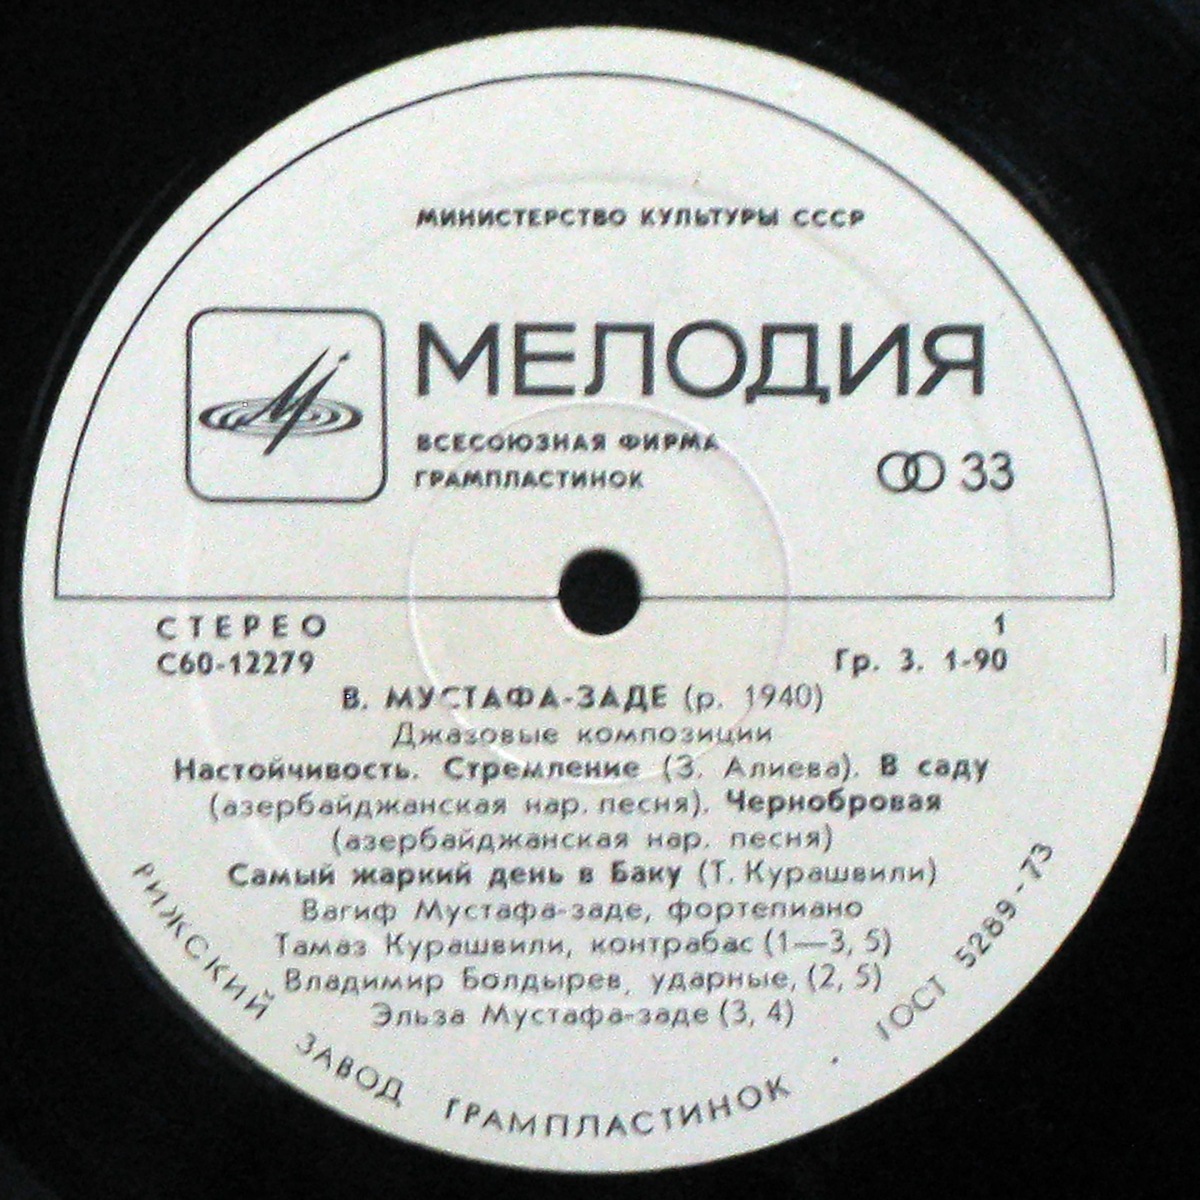 LP Вагиф Мустафа - Заде — Джазовые Композиции (1979) фото 2